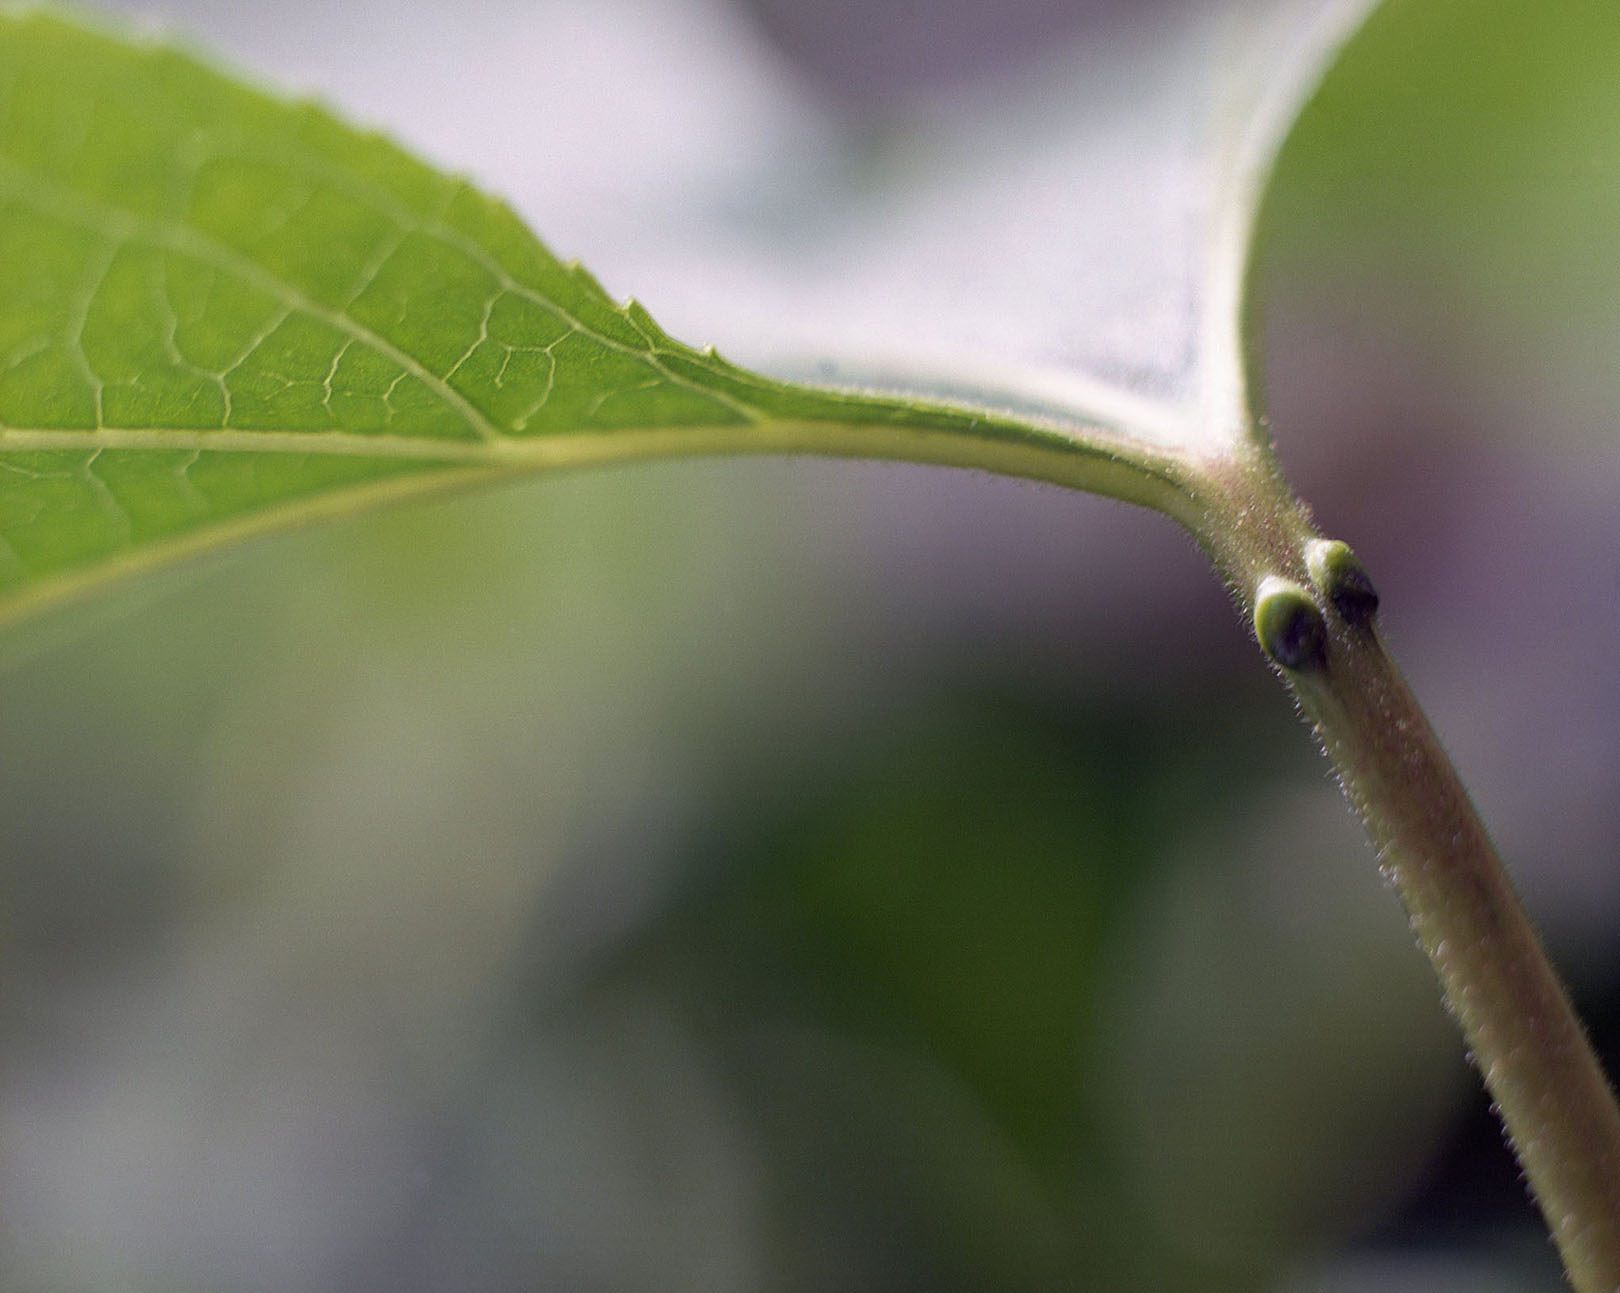 1 Honour Stewart Passiflora incarnata leaf stem.jpg